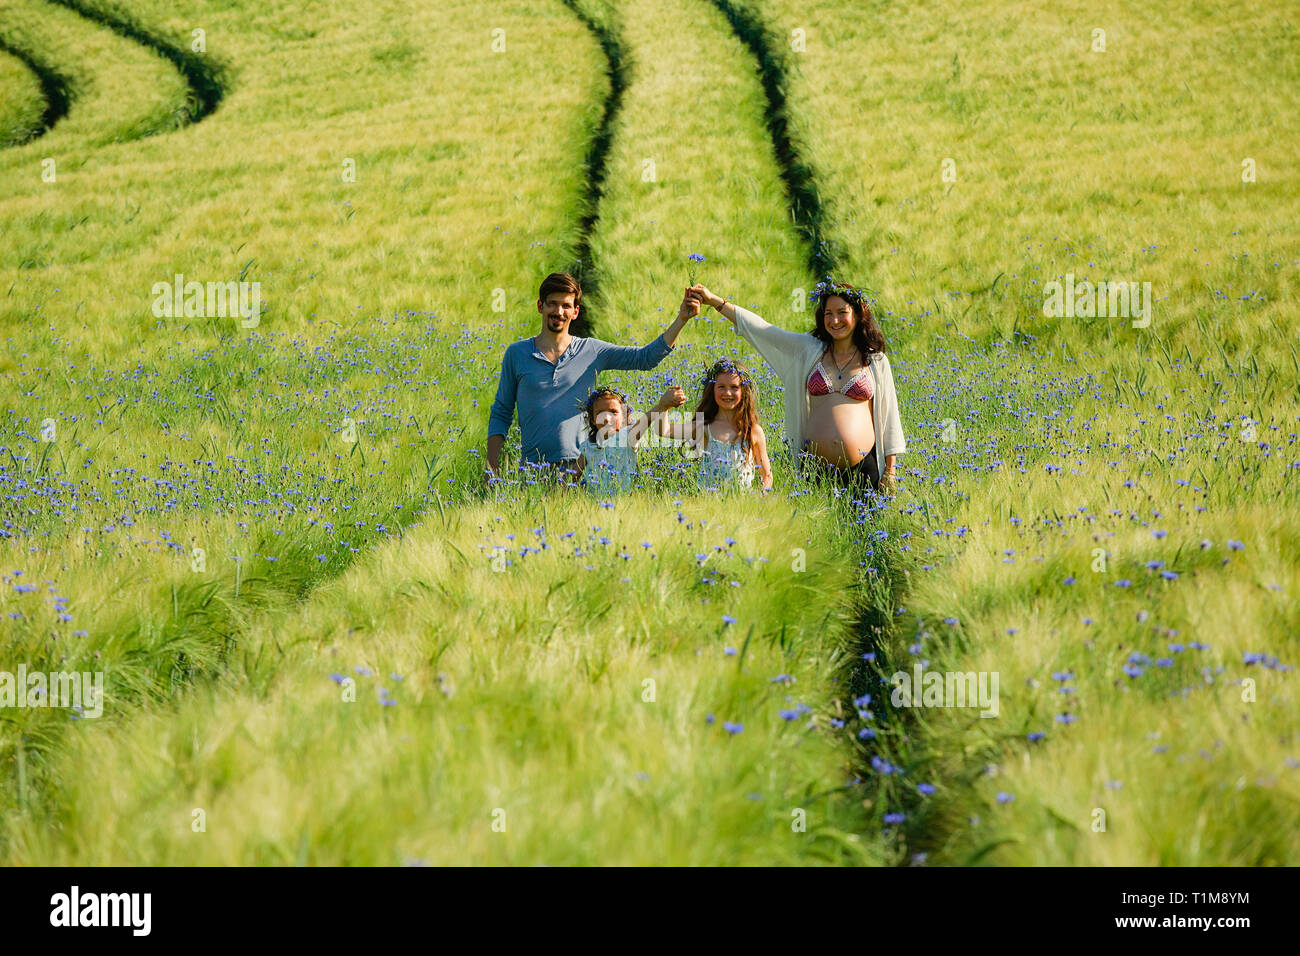 Ritratto famiglia incinta in un campo verde rurale soleggiato e idilliaco con fiori selvatici Foto Stock